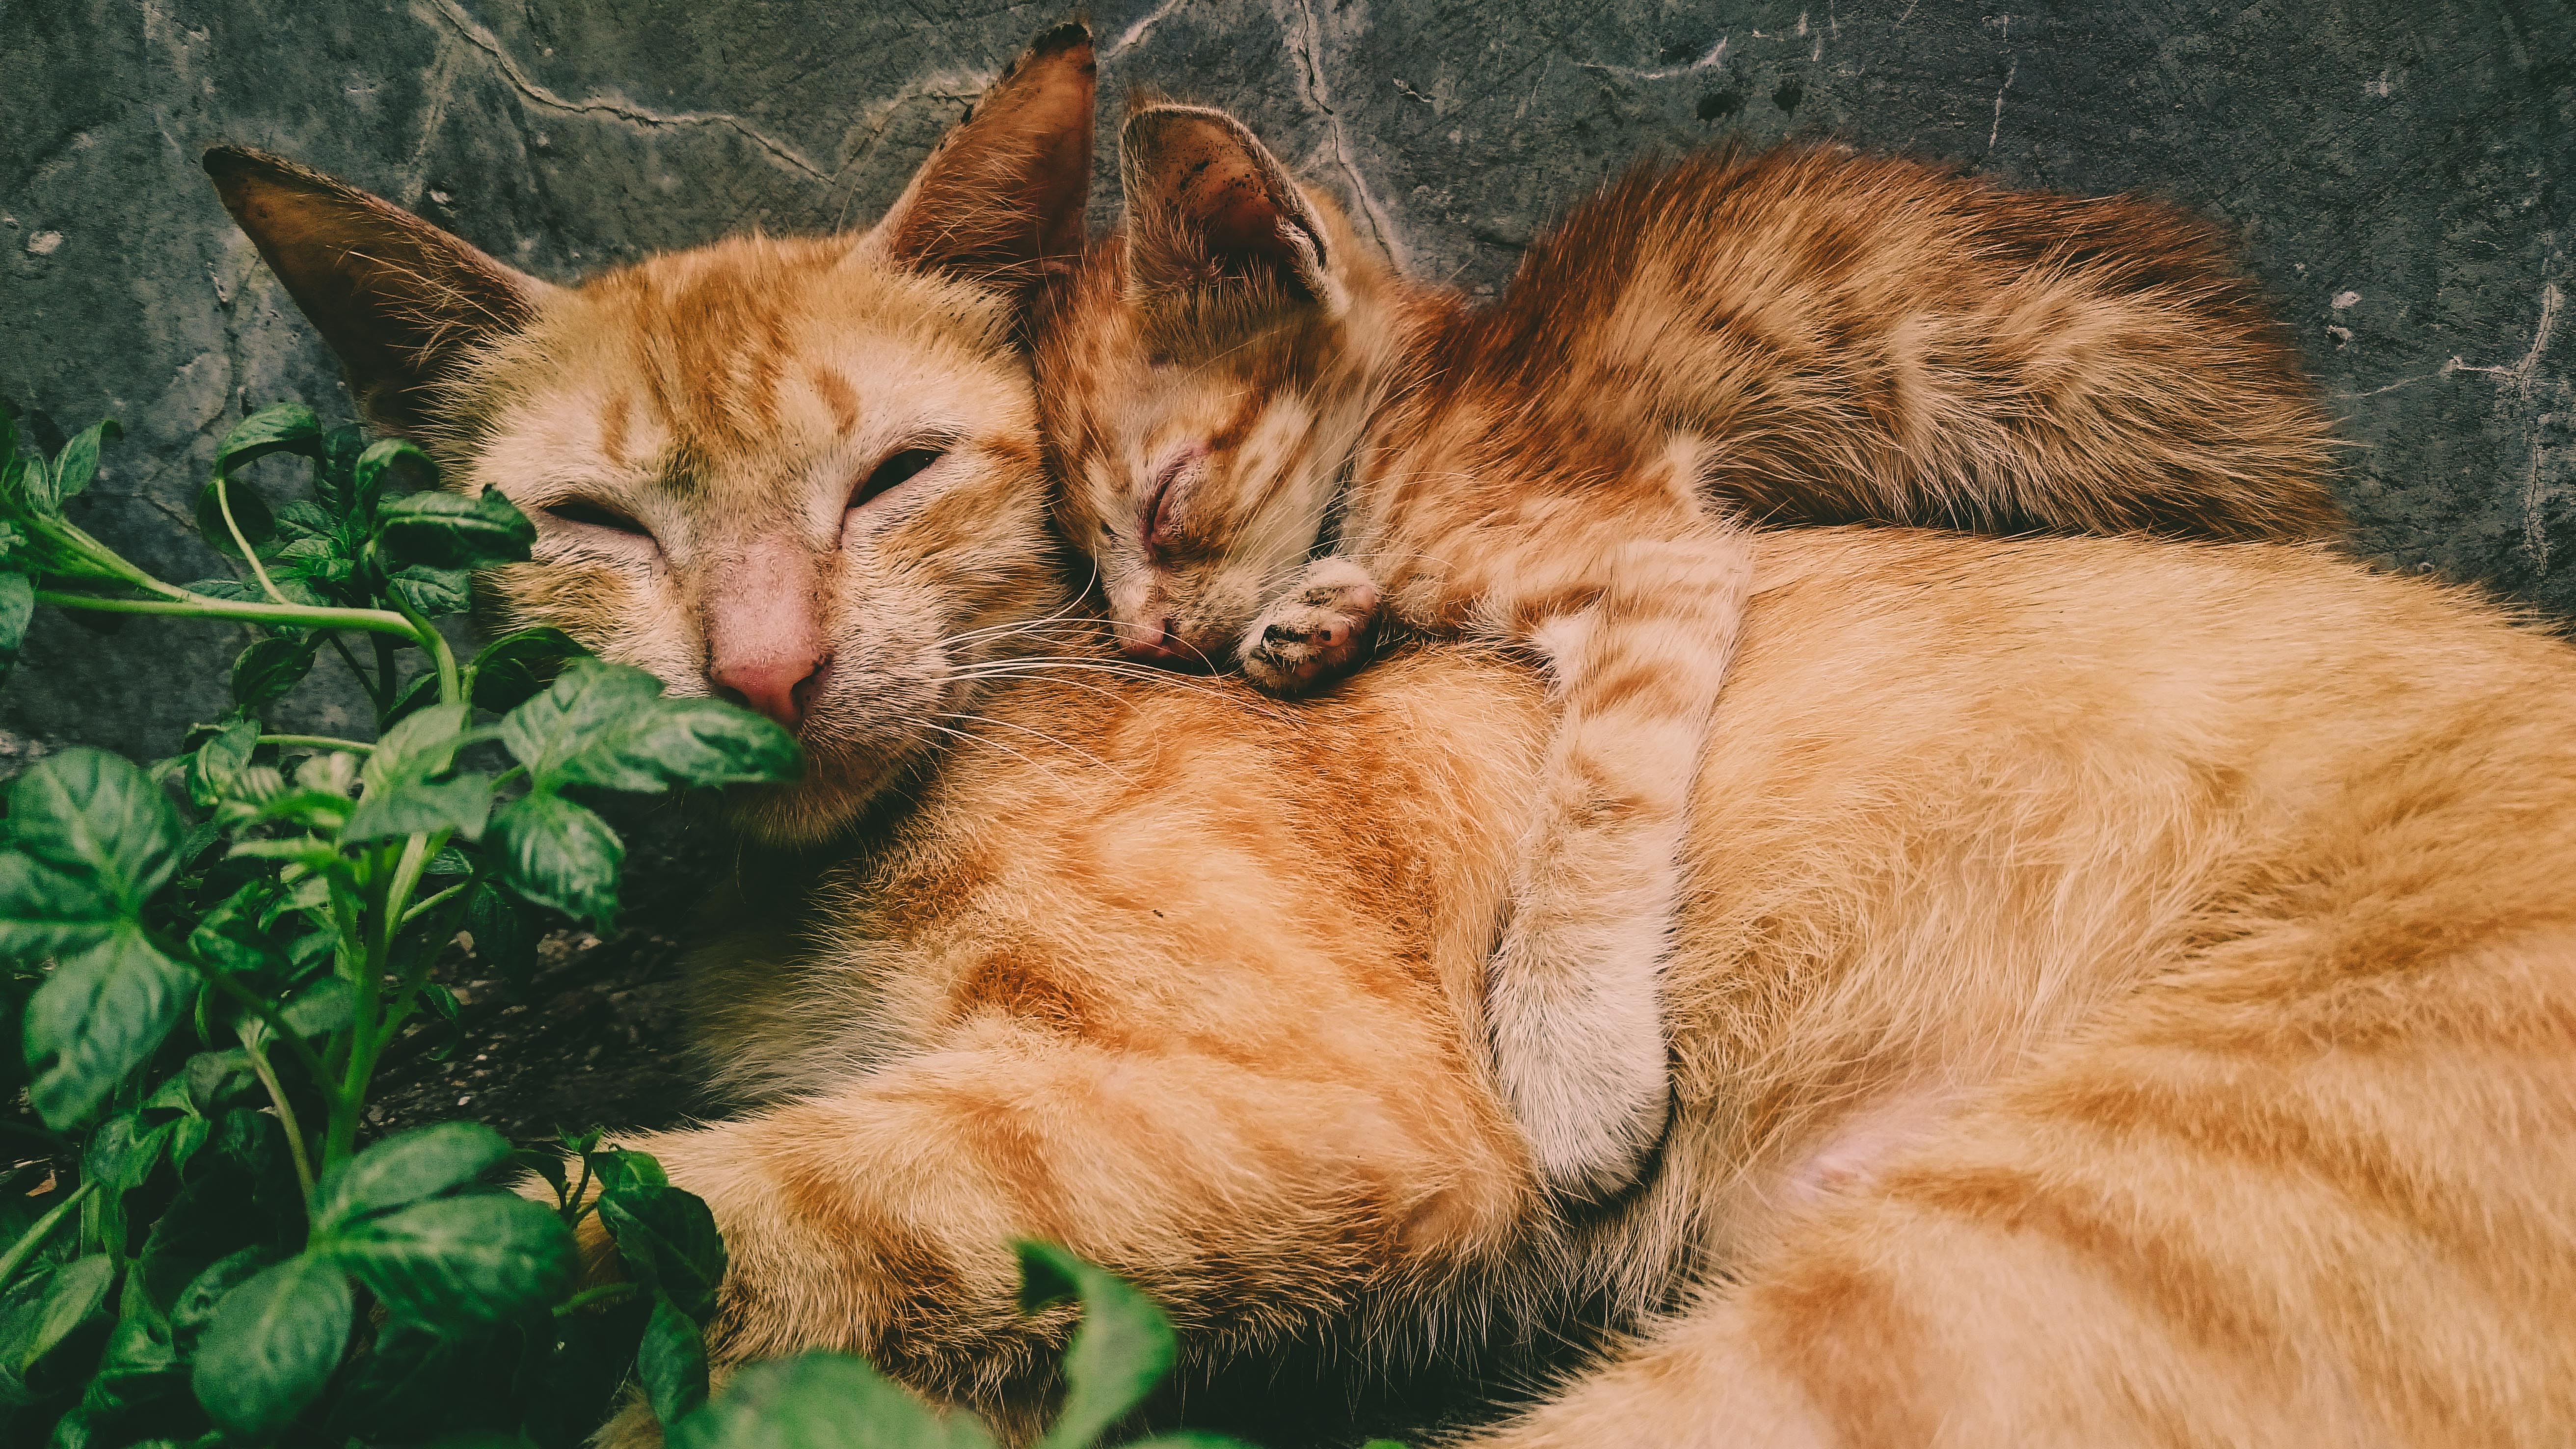 orange kittens cuddling